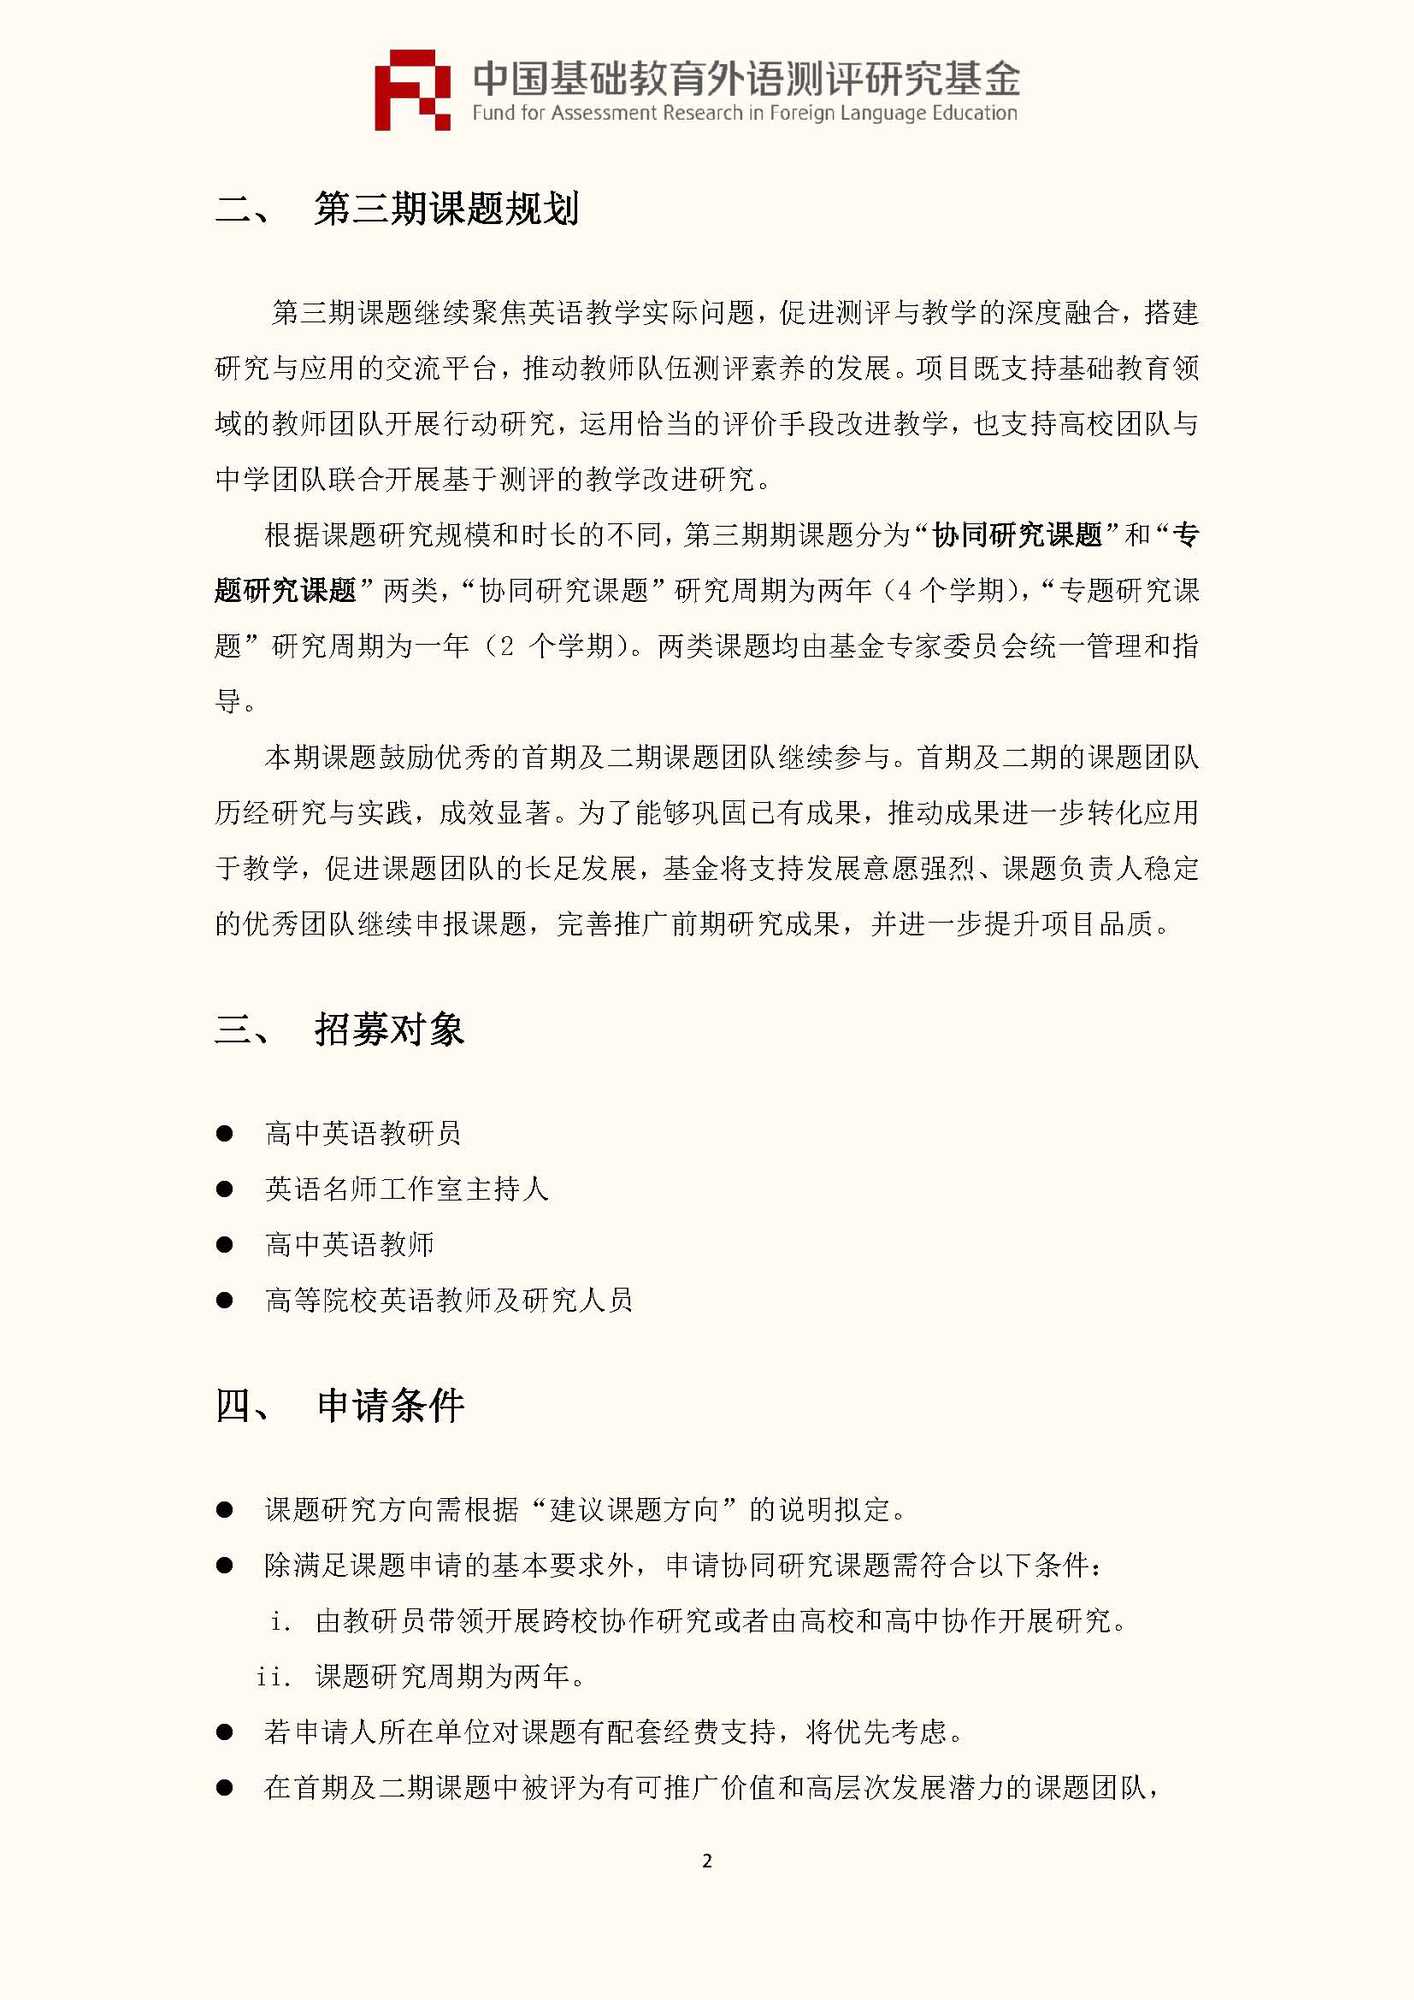 文件1：“中国基础教育外语测评研究基金”第三期课题申报指南_页面_04